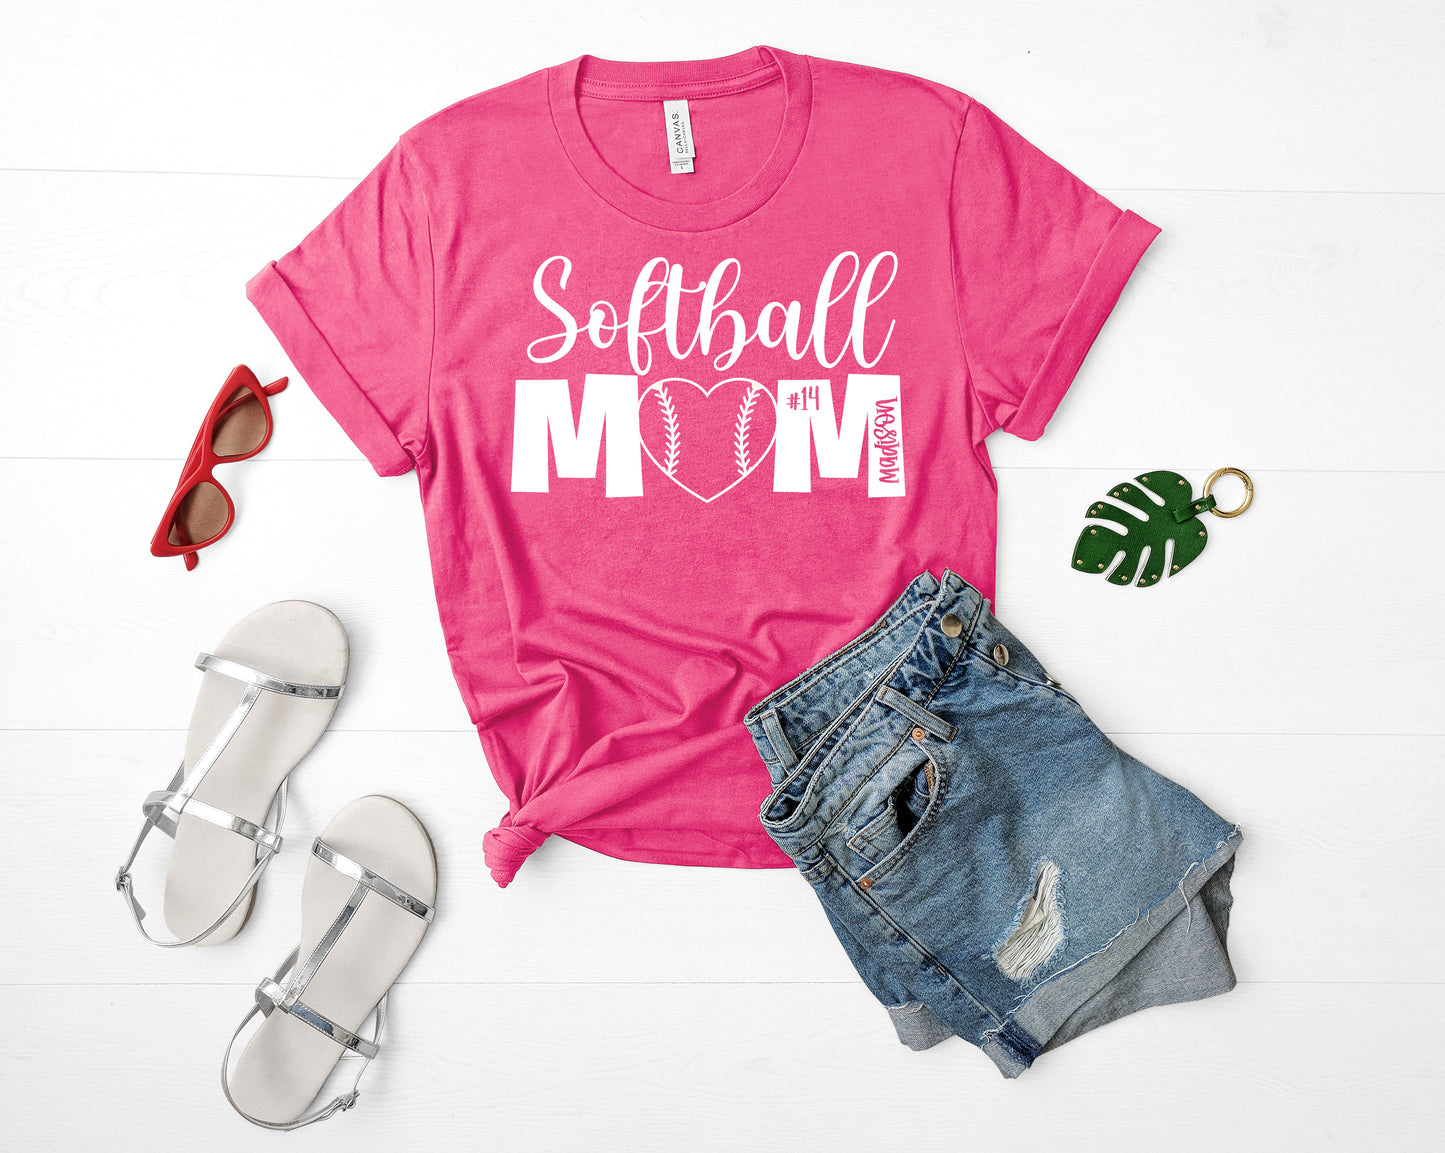 Pink Softball Mom Shirt